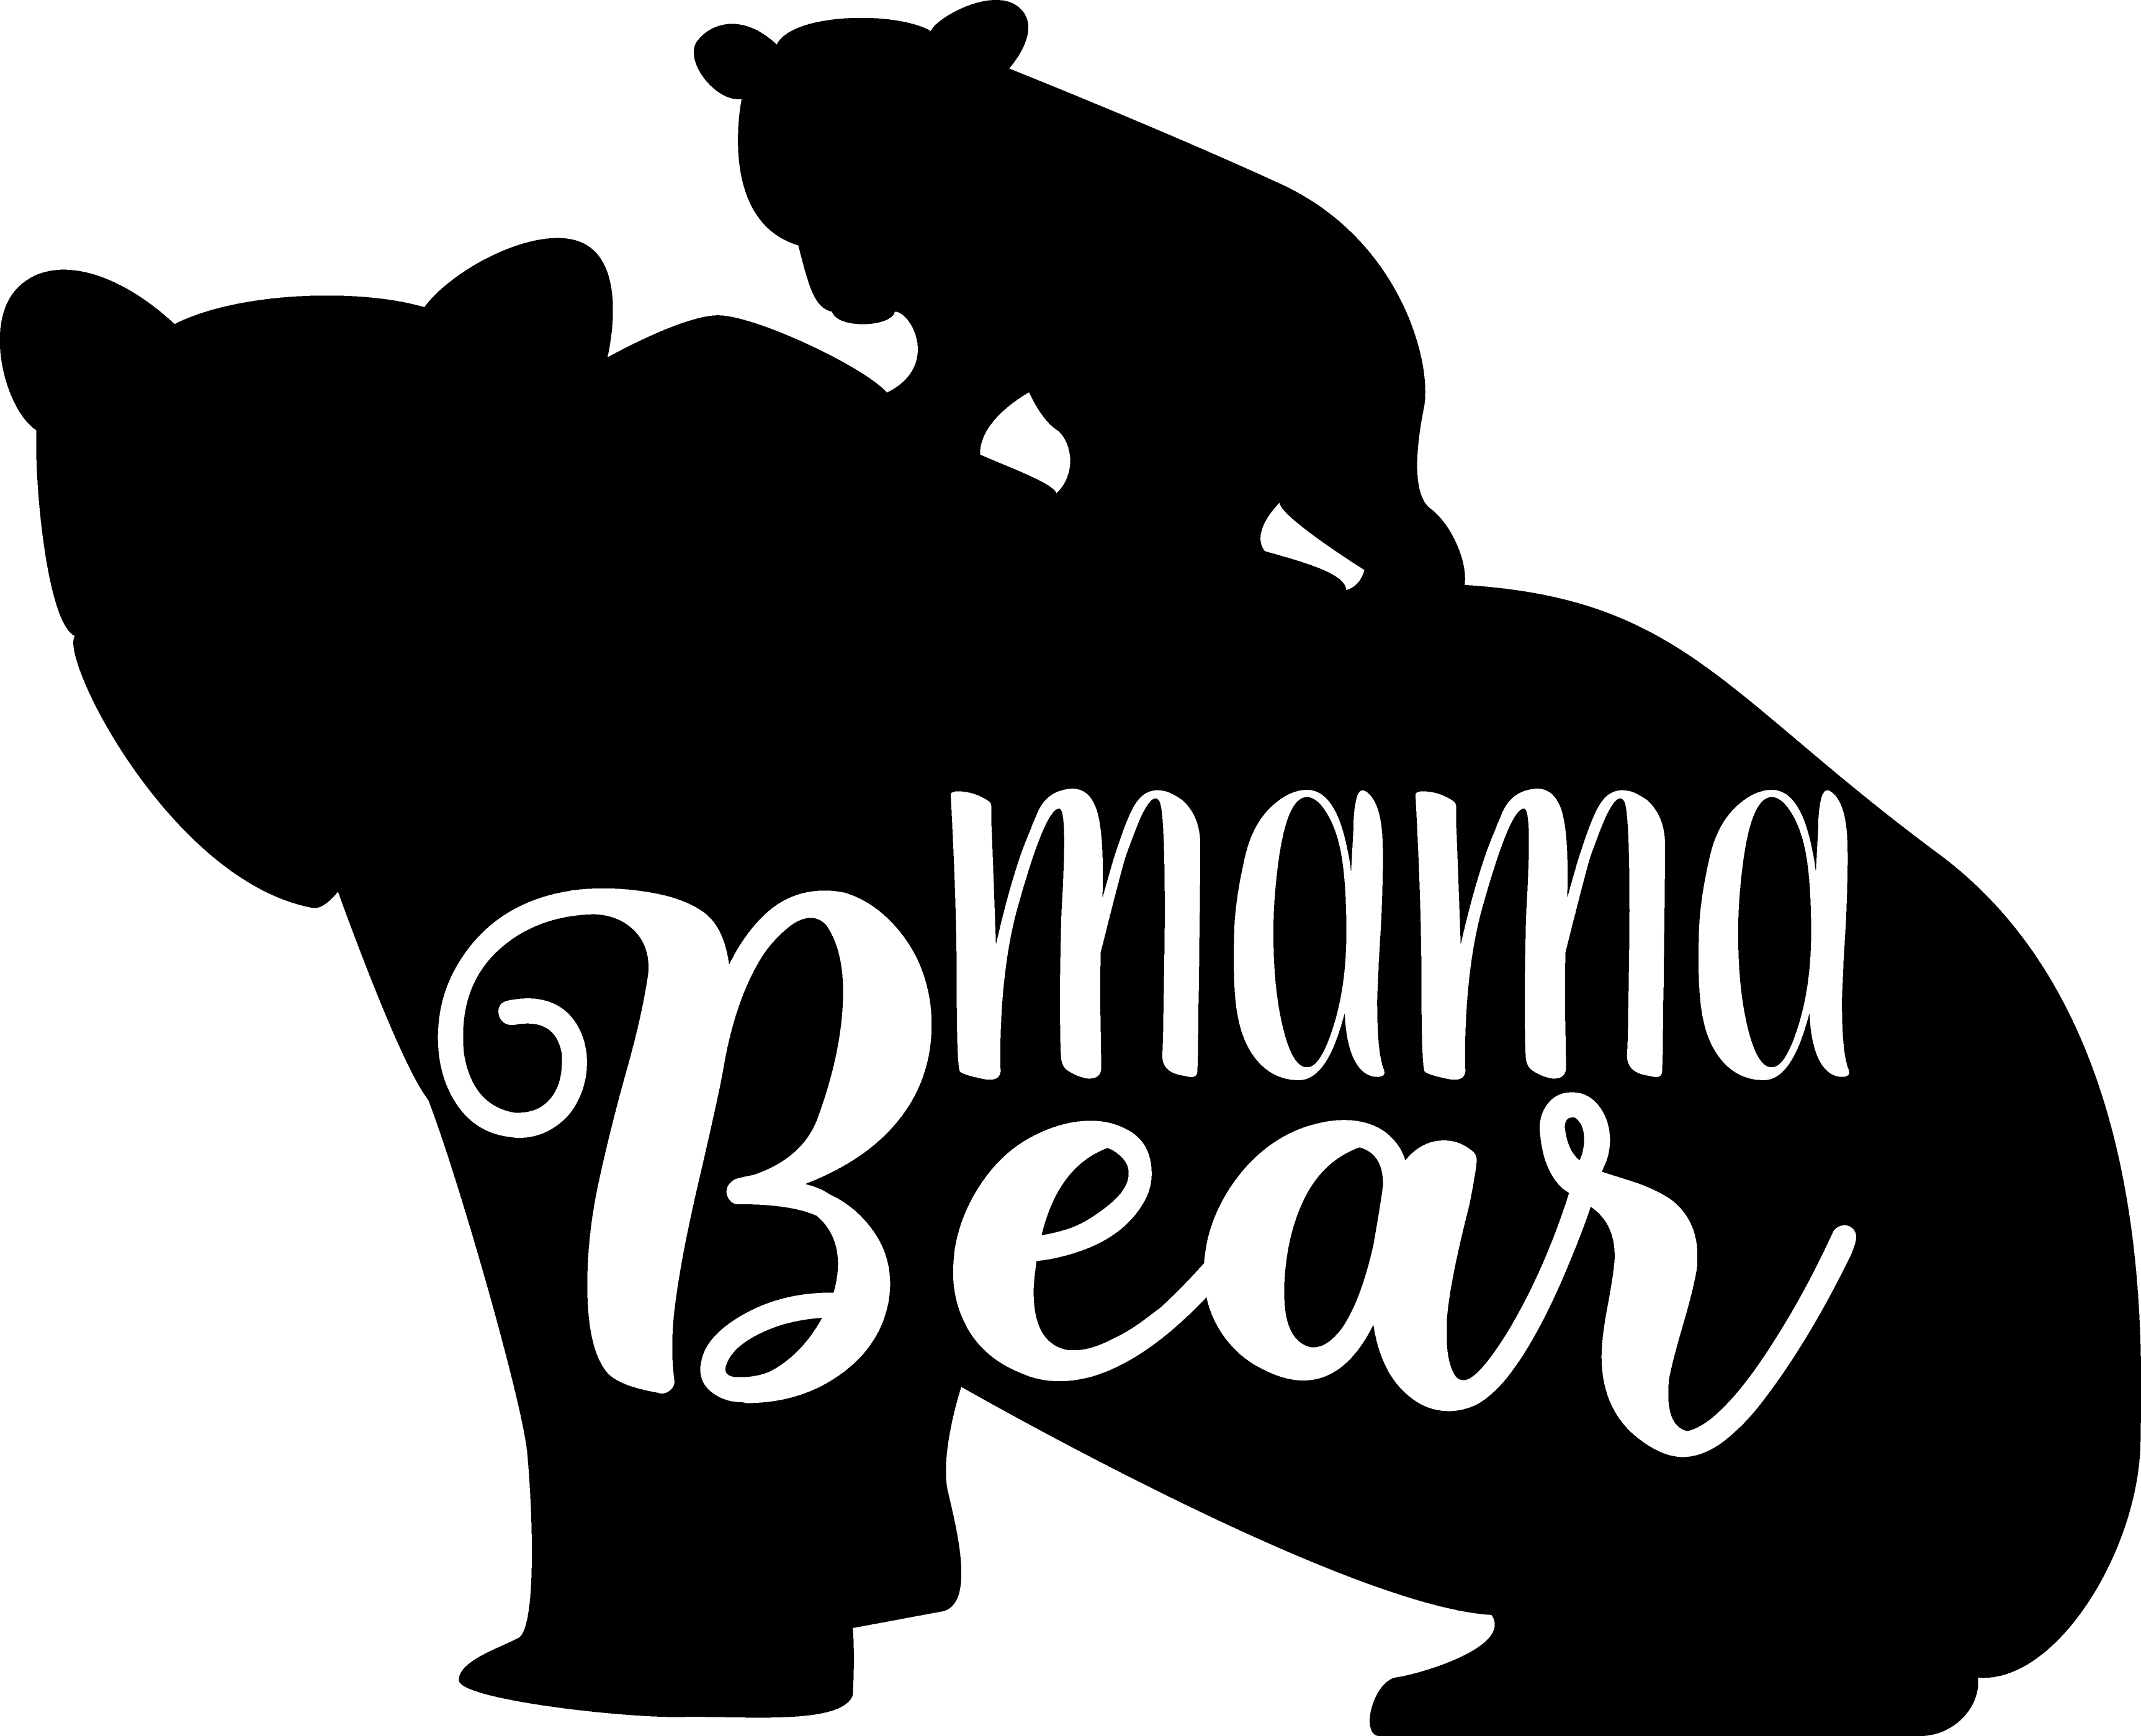 Mama Bear & Cubs - Great Outdoor Decor